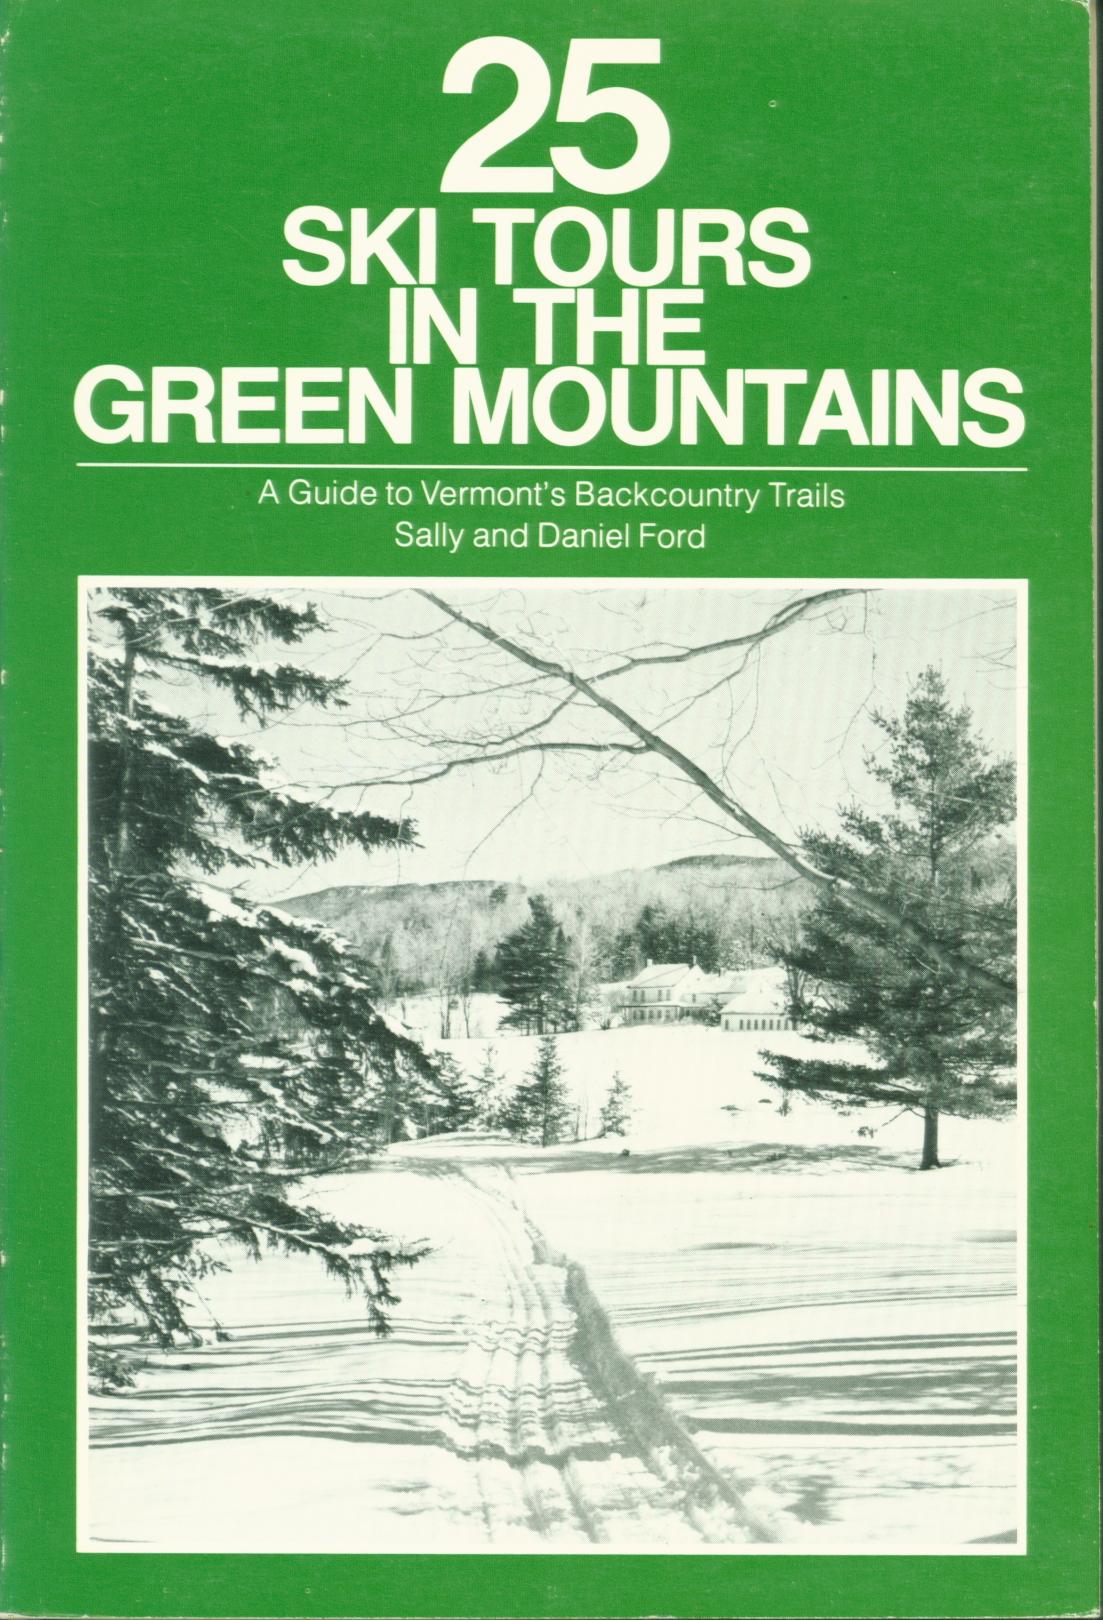 25 SKI TOURS IN THE GREEN MOUNTAINS. 